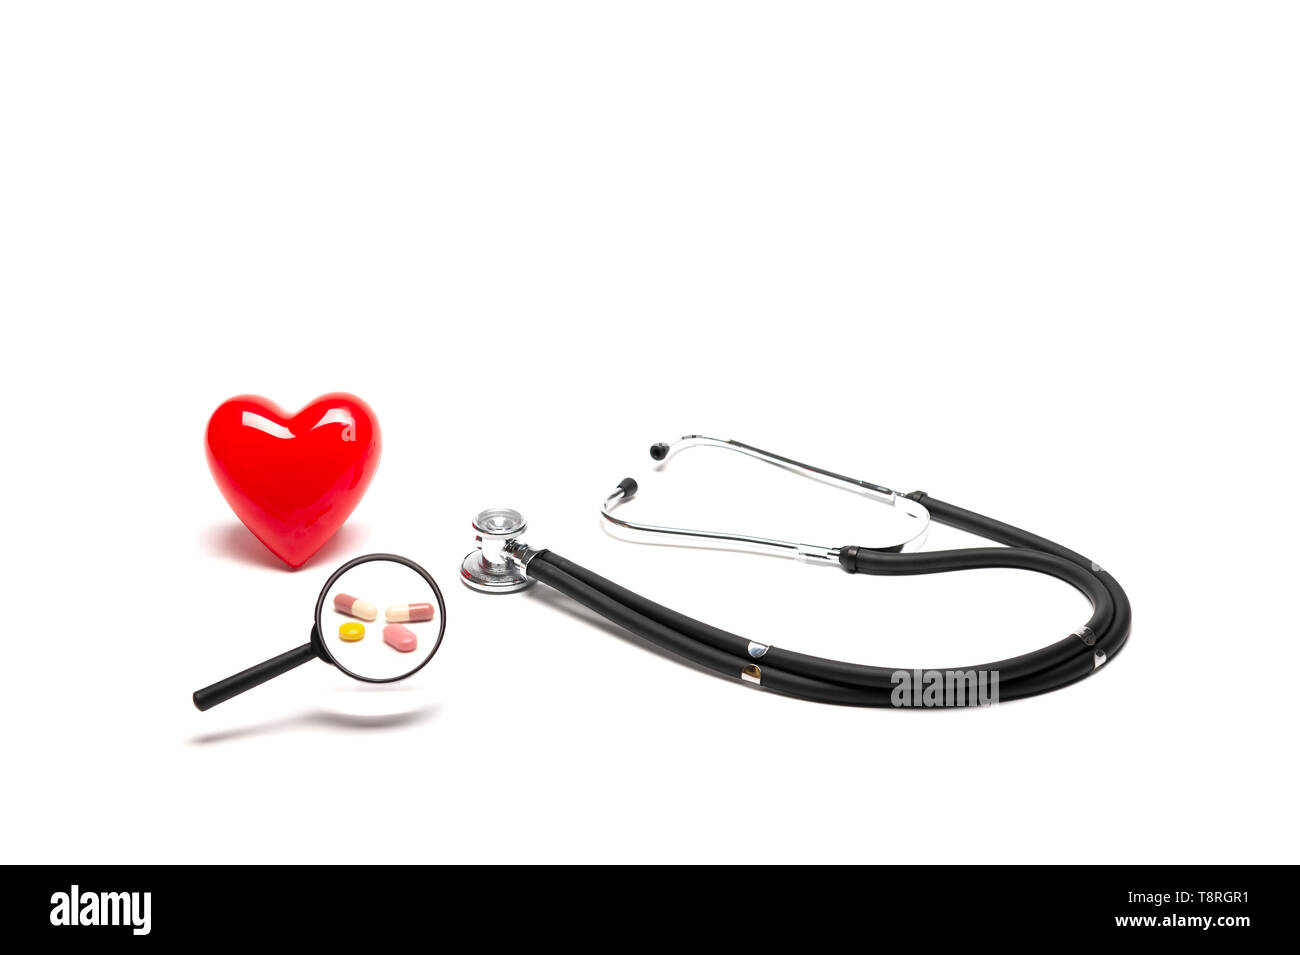 Vista frontale di plastica cuore rosso modello, stetoscopi, e farmaci con lente di ingrandimento su sfondo bianco, medico e un sano concetto. Foto Stock